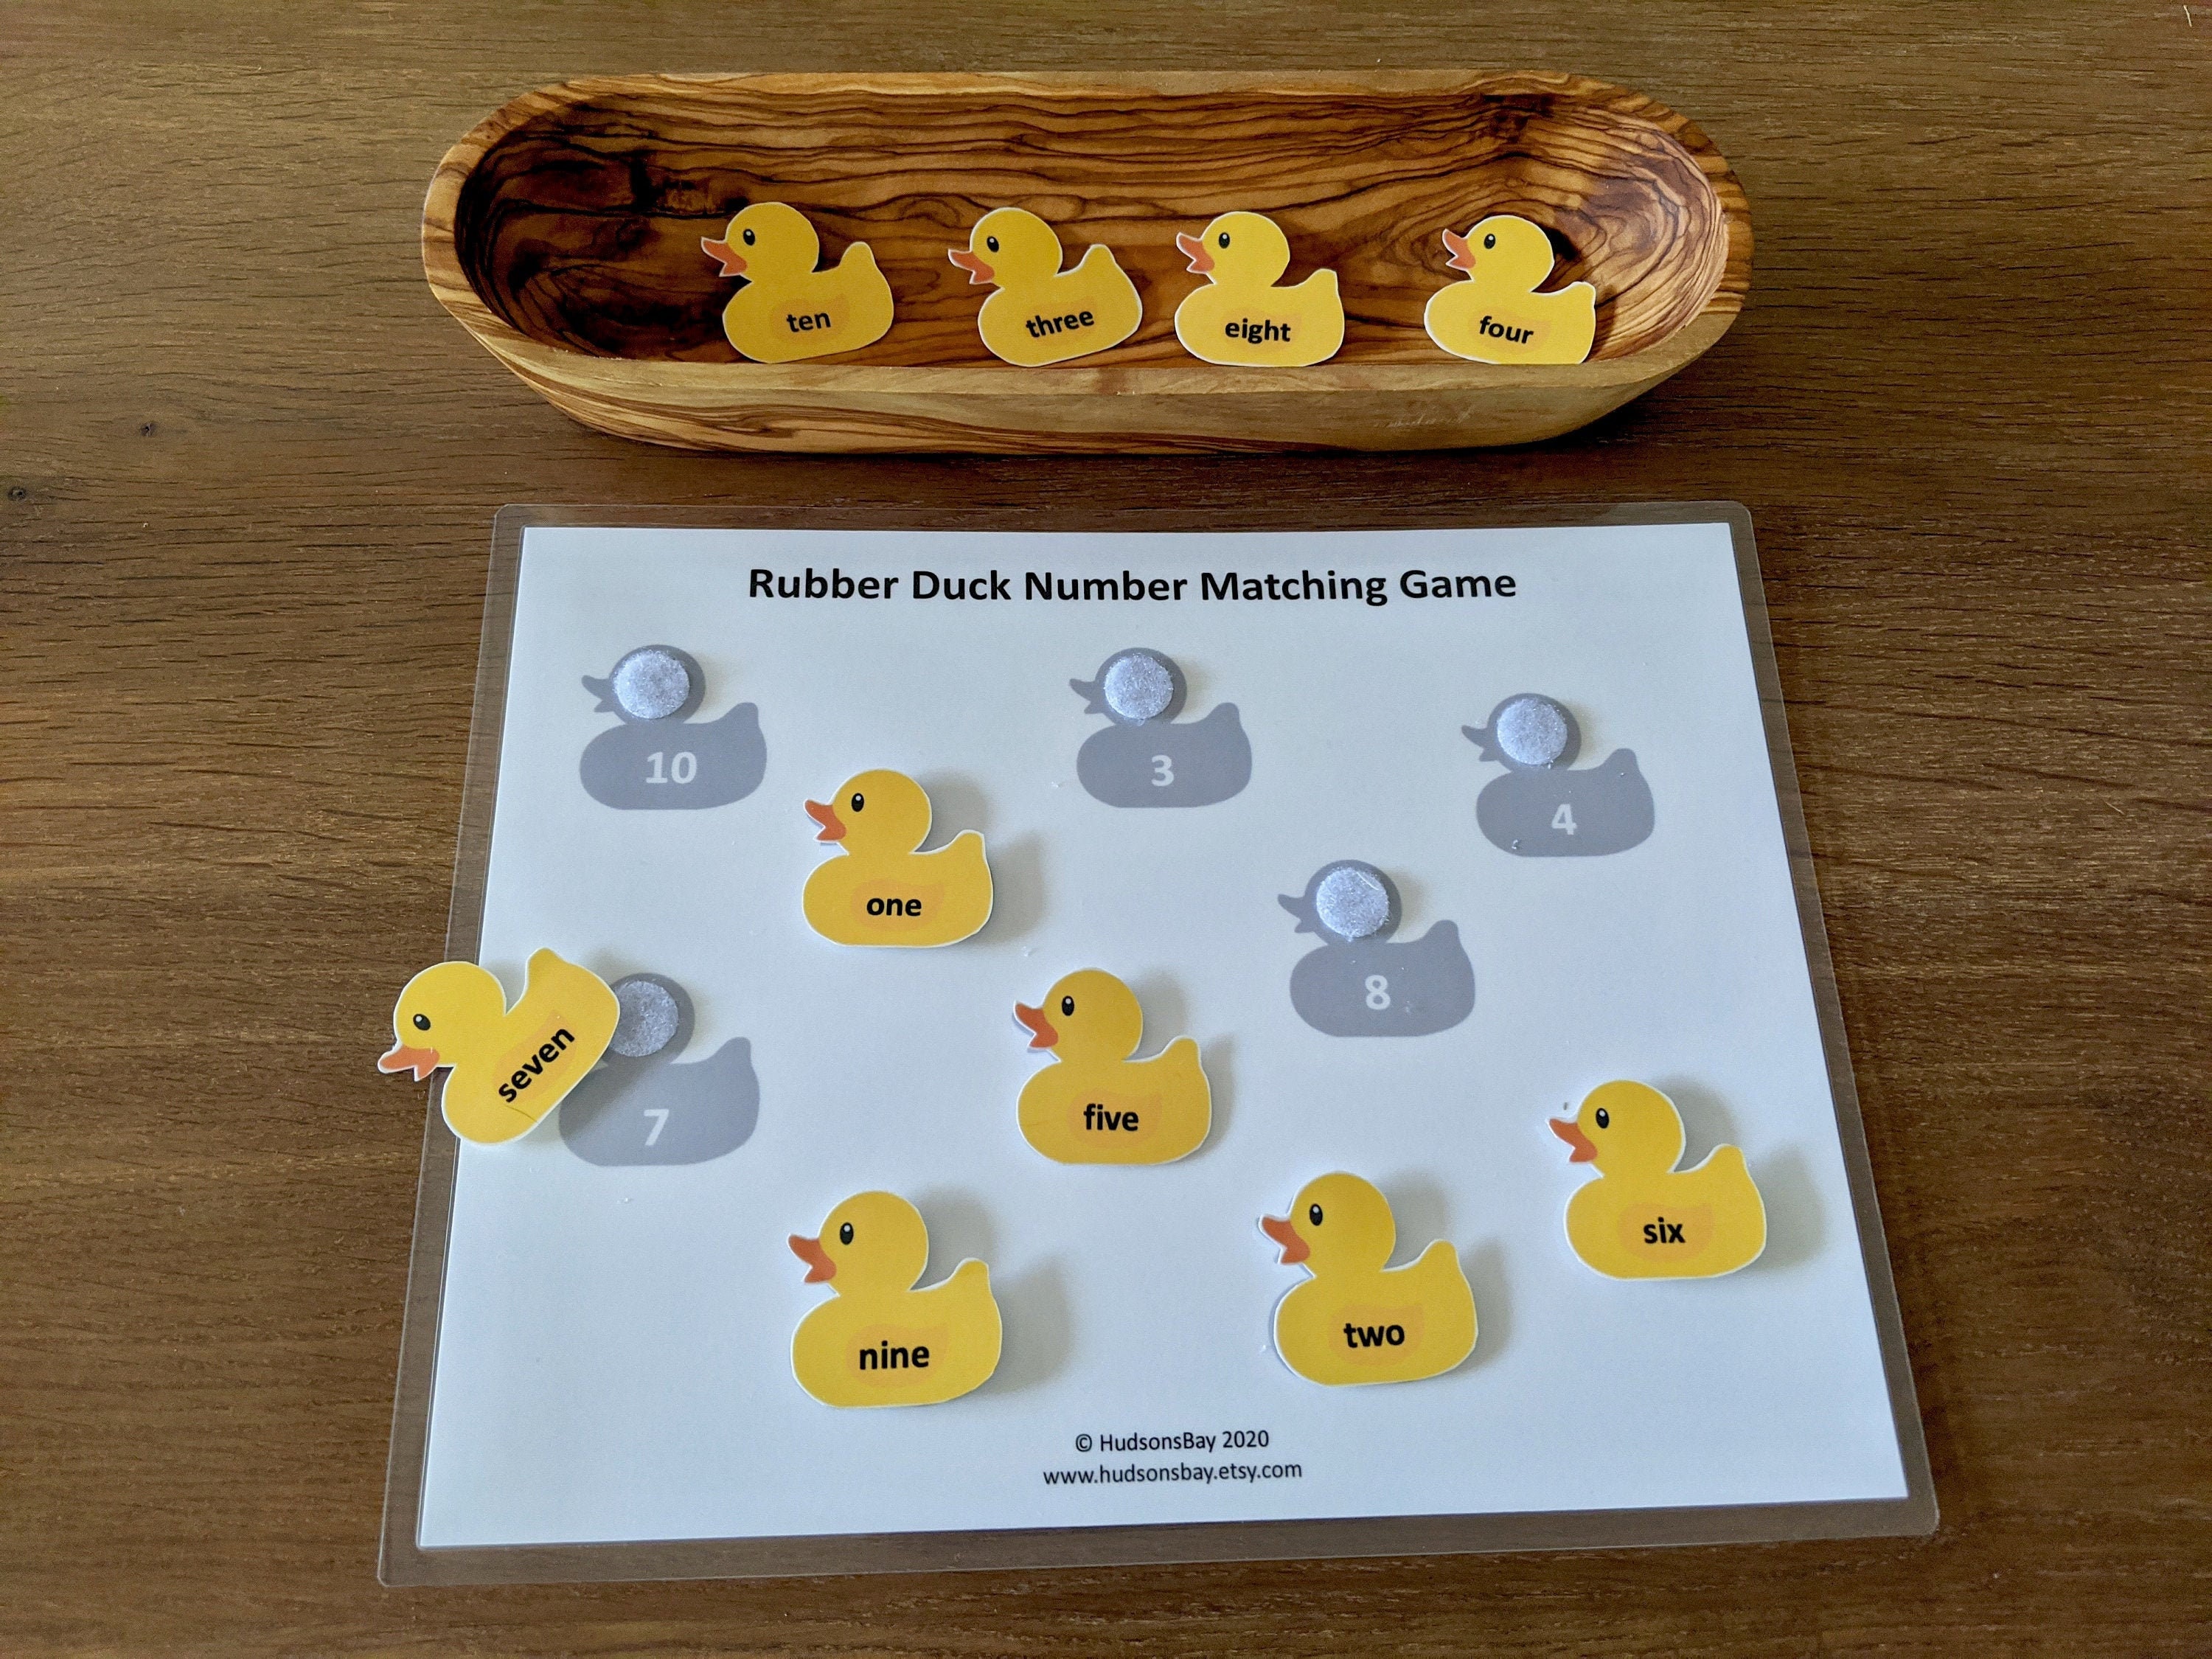 10 rubber ducks book